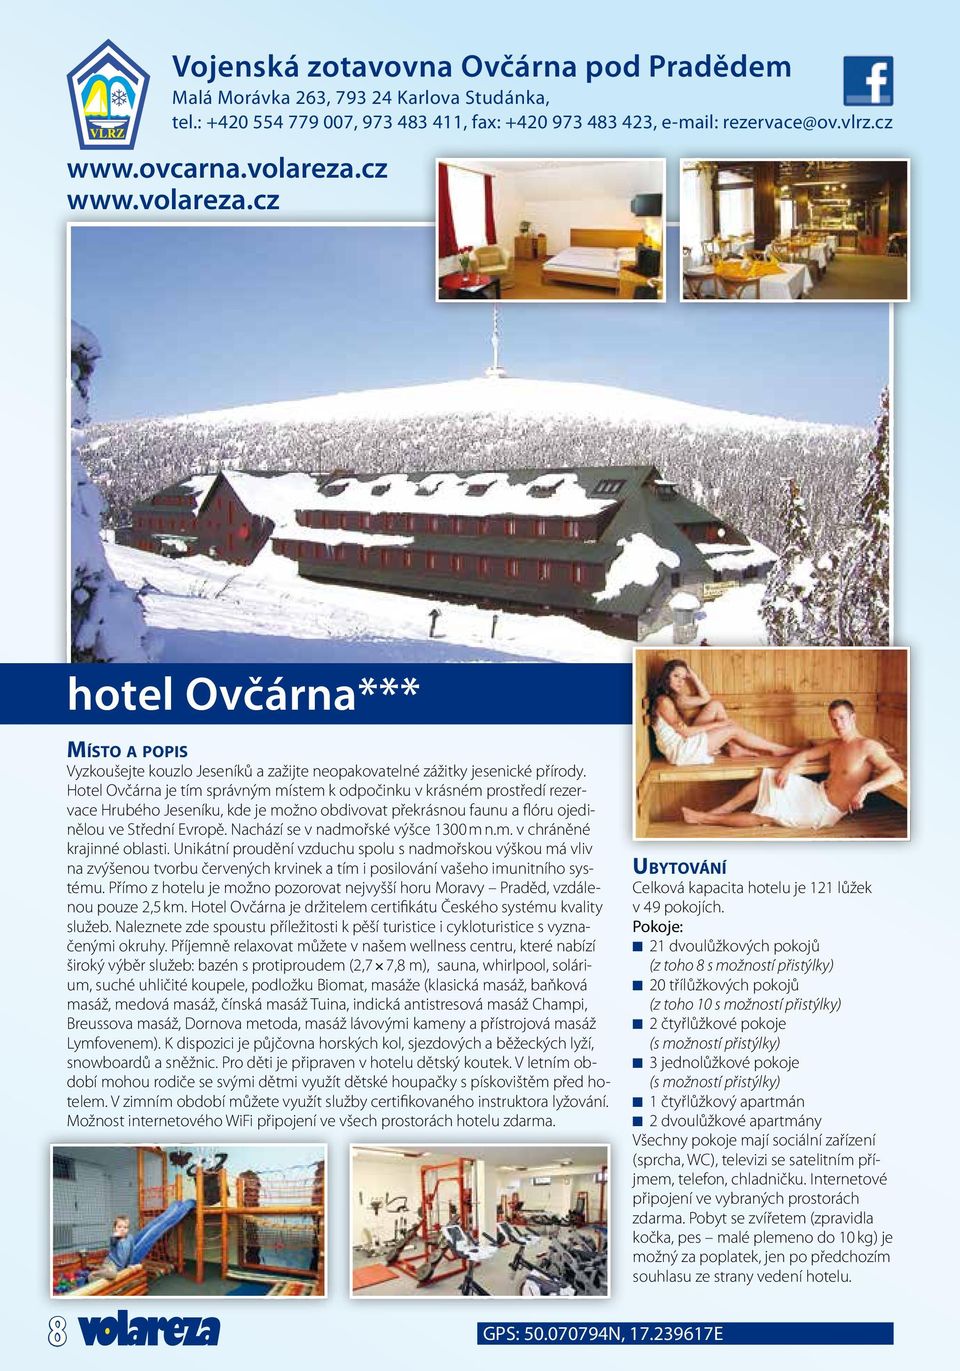 Hotel Ovčárna je tím správným místem k odpočinku v krásném prostředí rezervace Hrubého Jeseníku, kde je možno obdivovat překrásnou faunu a flóru ojedinělou ve Střední Evropě.